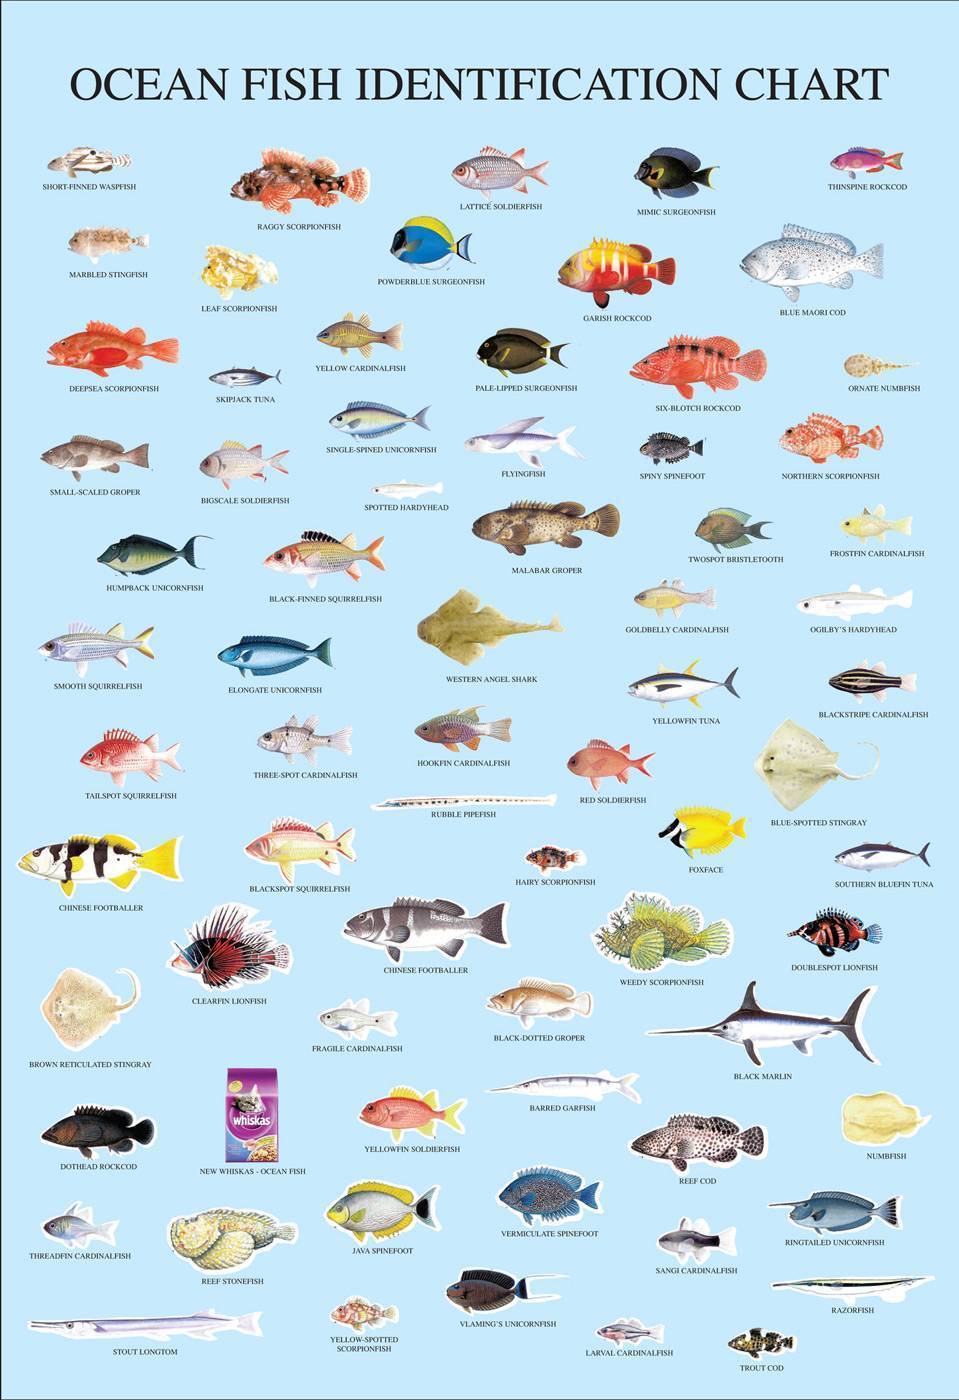 Как узнать вид рыбы по фото